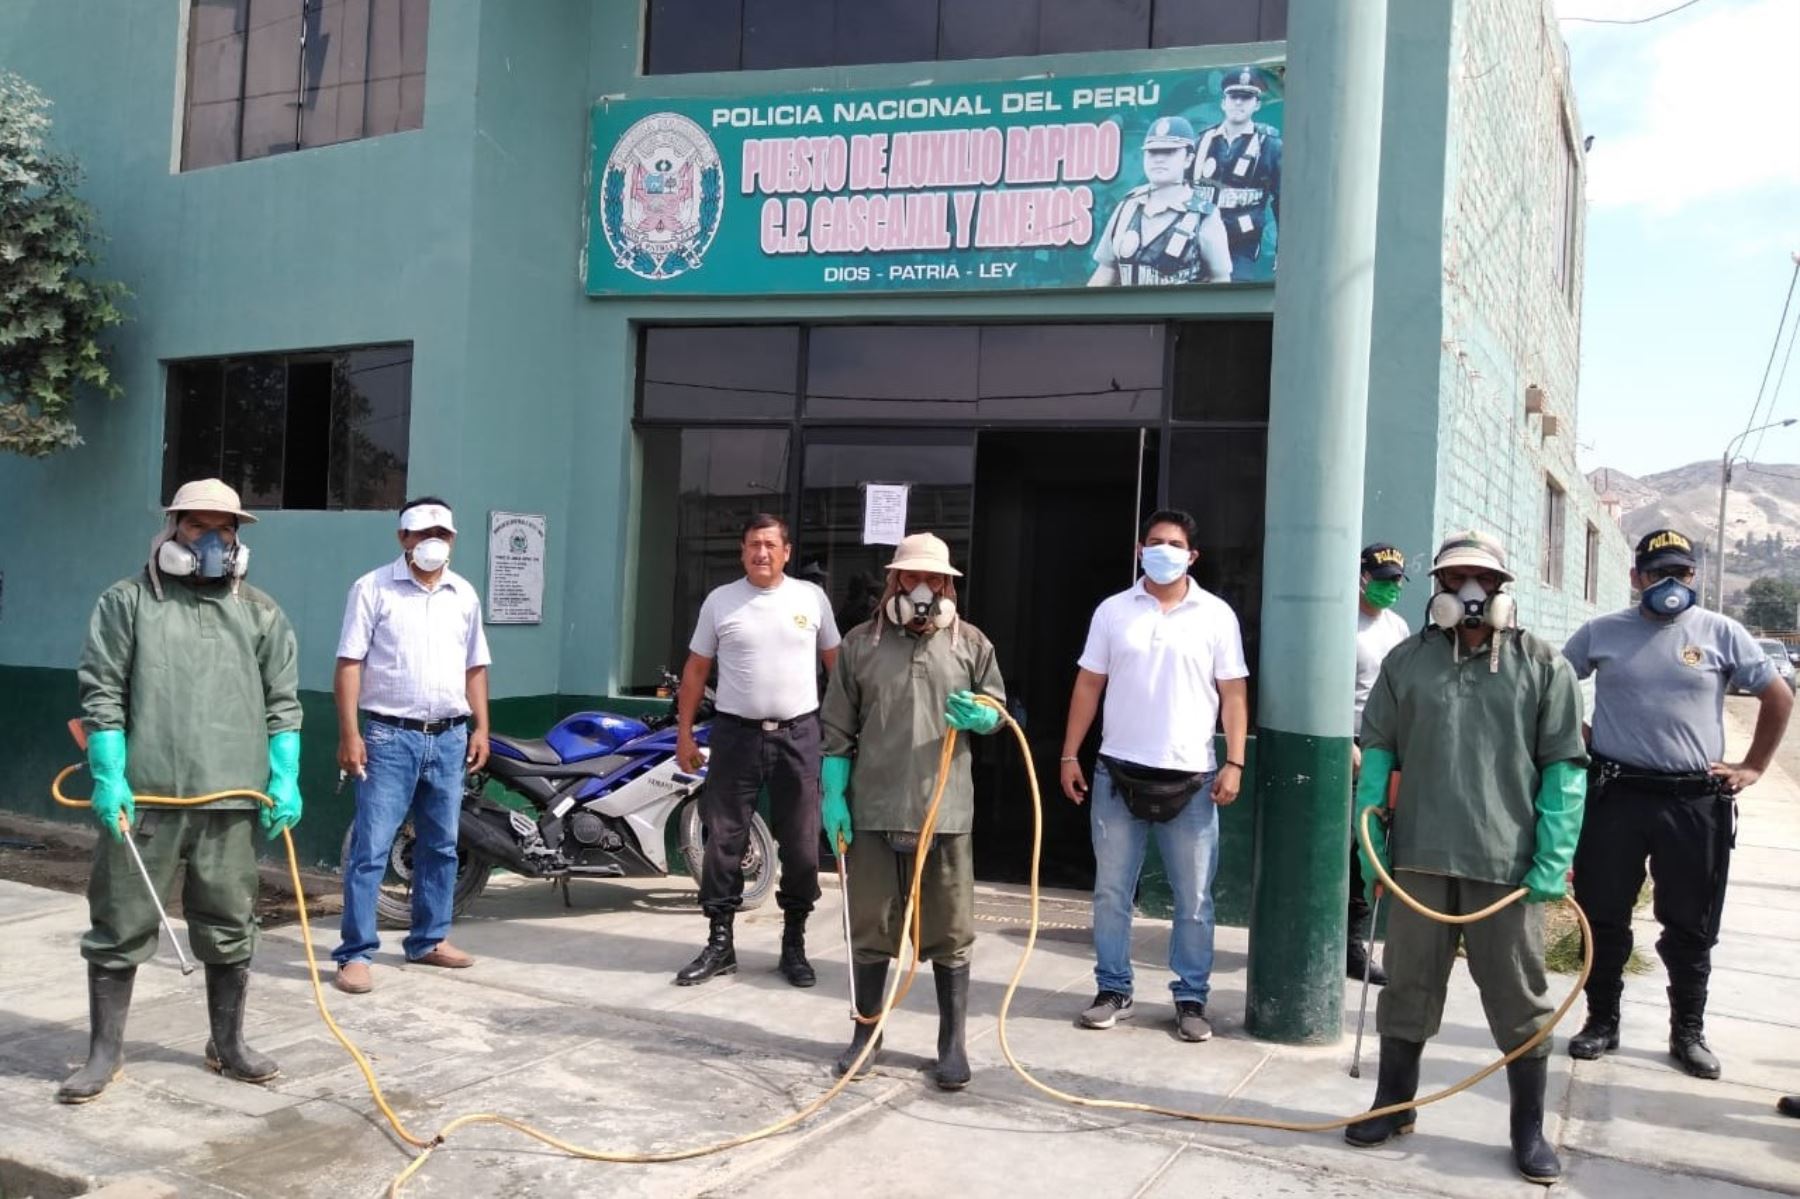 Campaña de desinfección y fumigación de locales públicos impulsada por la empresa agroindustrial Virú. ANDINA/Difusión